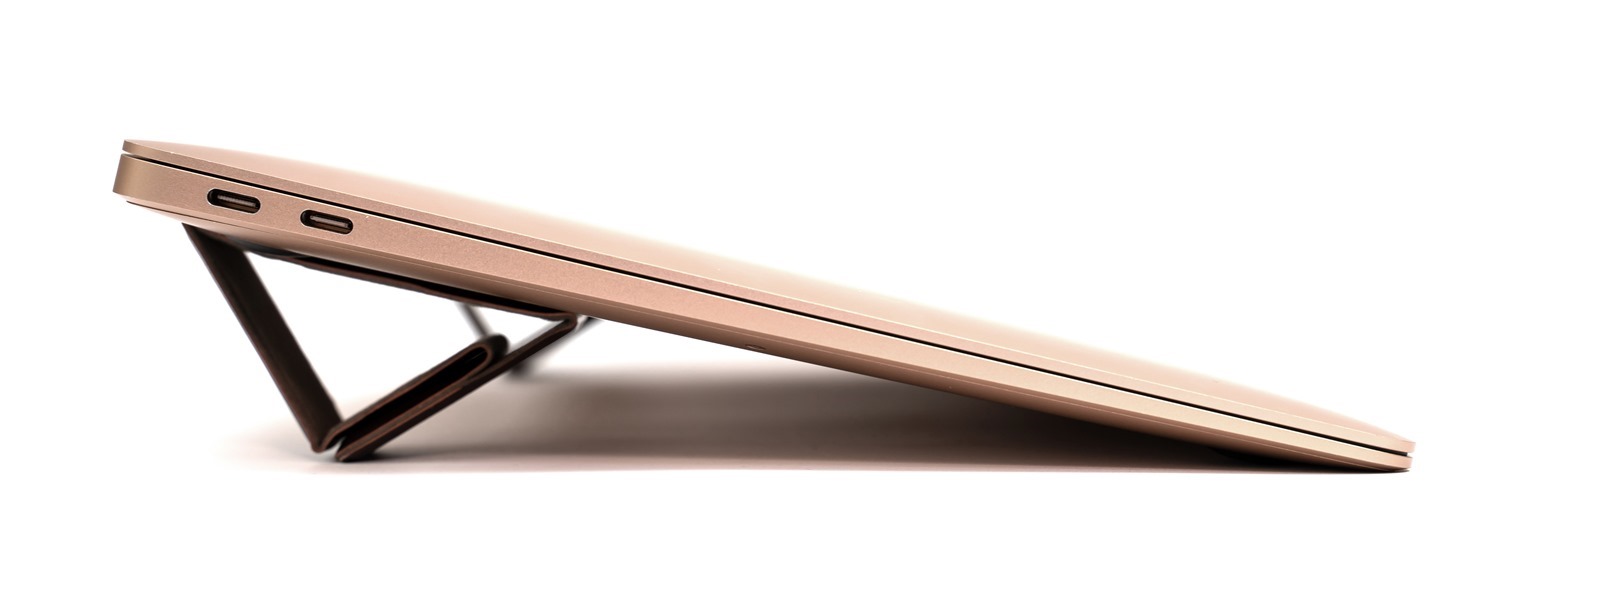 皮革質感、 0.4cm 的超薄輕巧，優雅自由，地表最小最美 Bestmade NEO 皮革筆電架來了！ @3C 達人廖阿輝